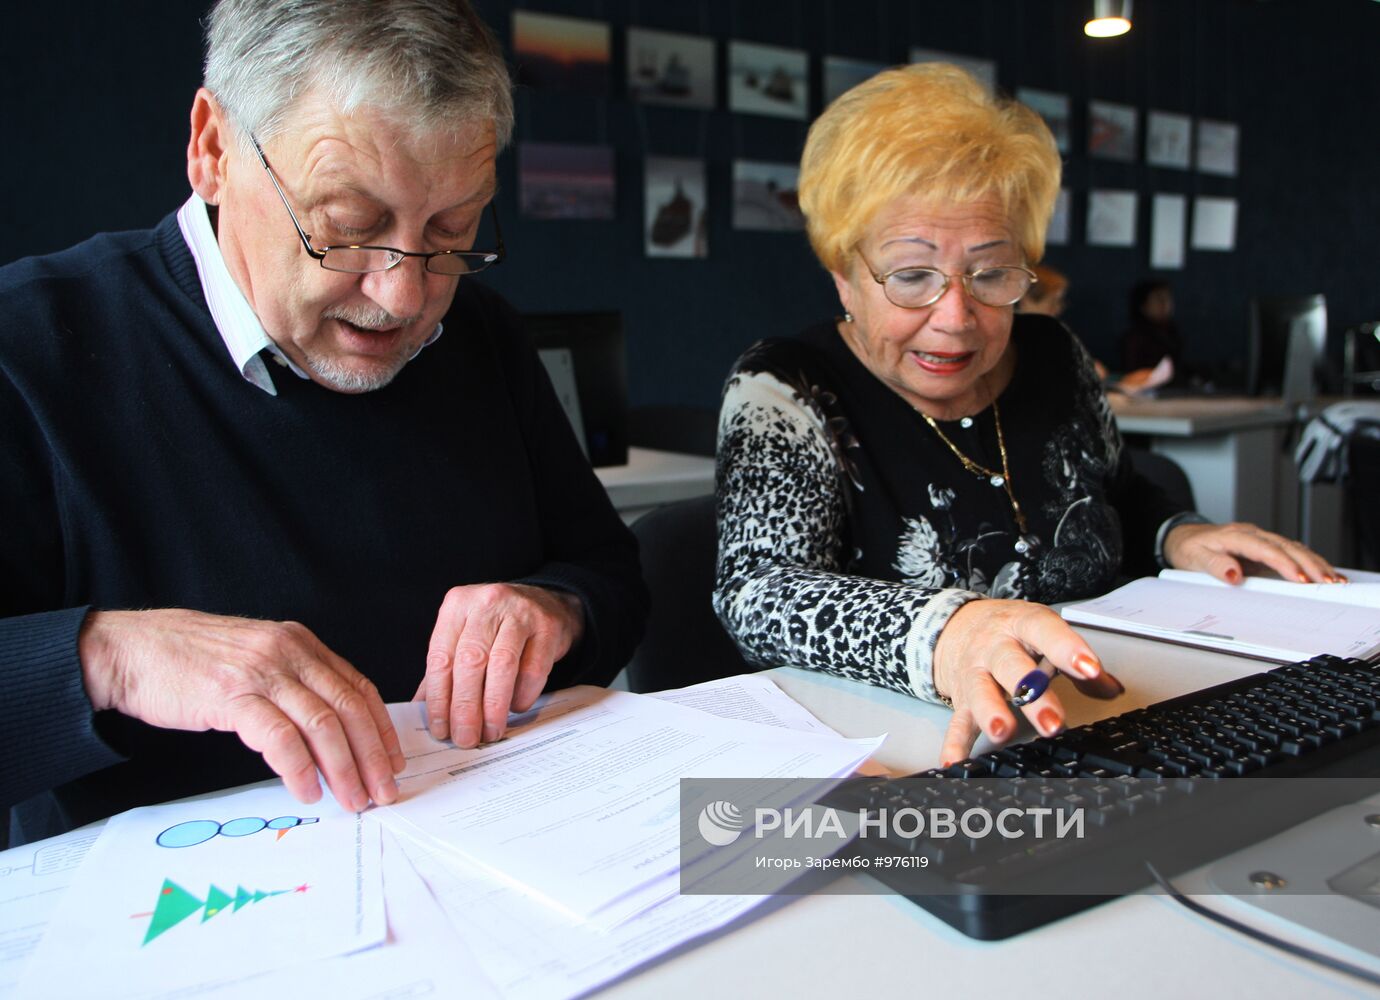 Курсы компьютерной грамотности для пенсионеров в Калининграде